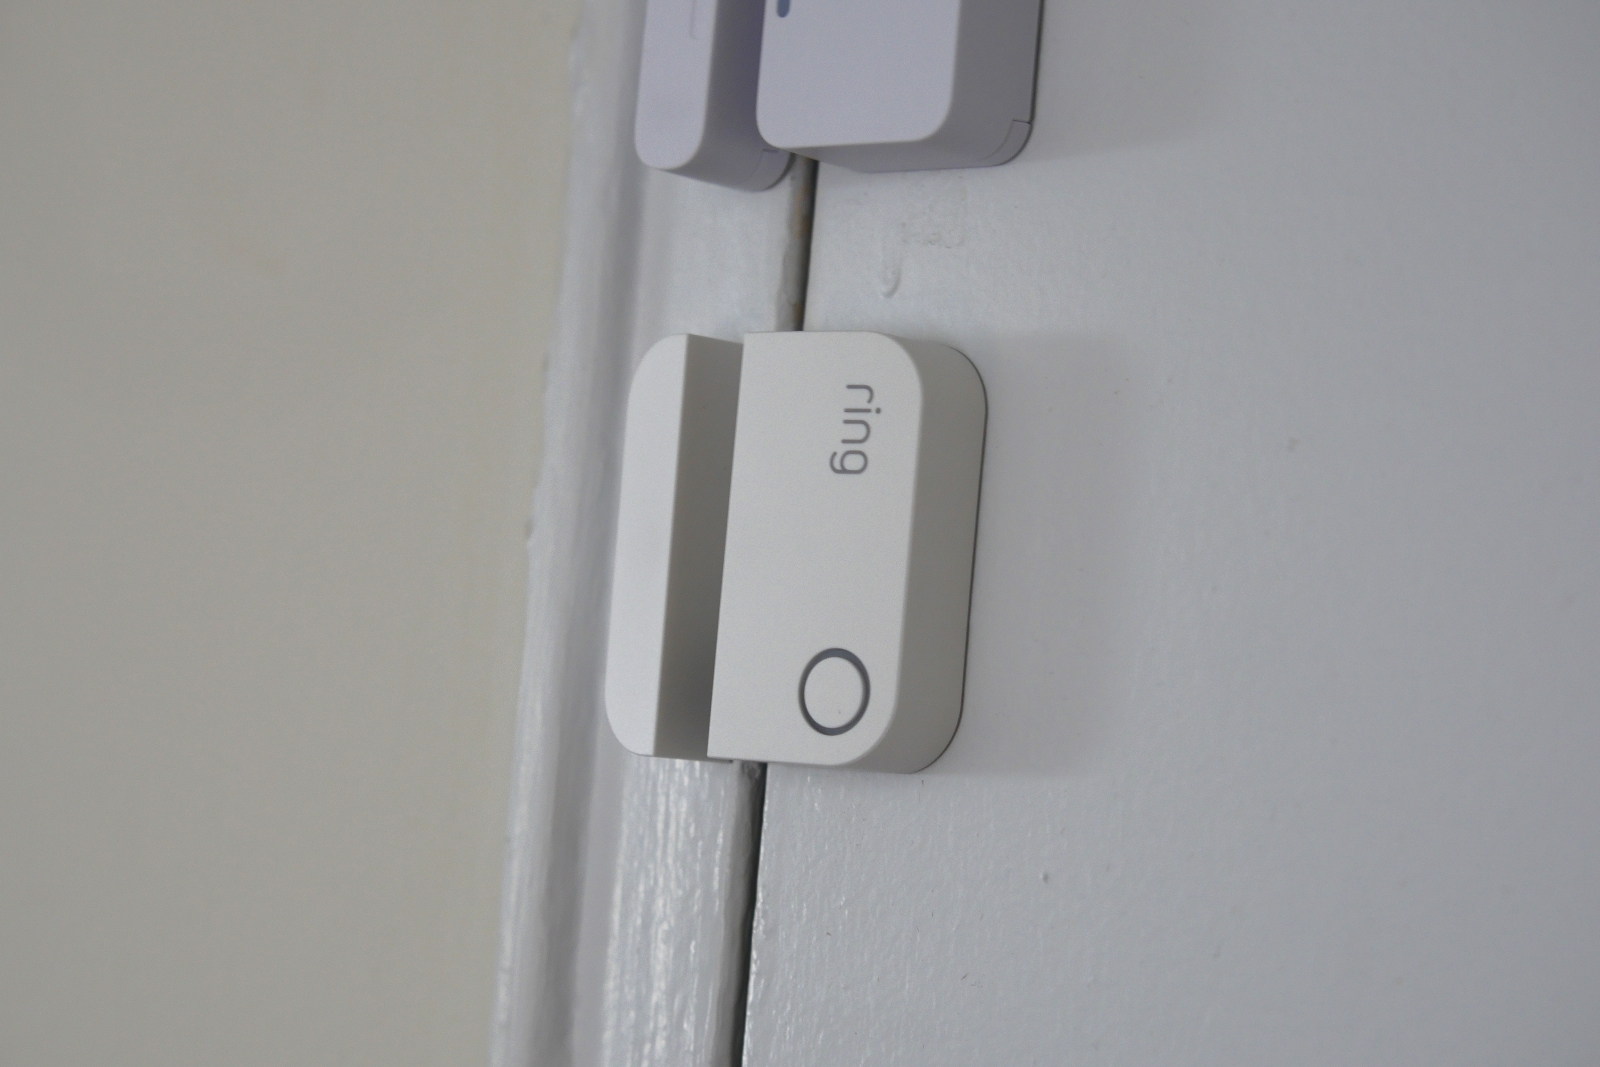 Ring Alarm Door & Window Contact Sensor (2nd Gen) for sale online